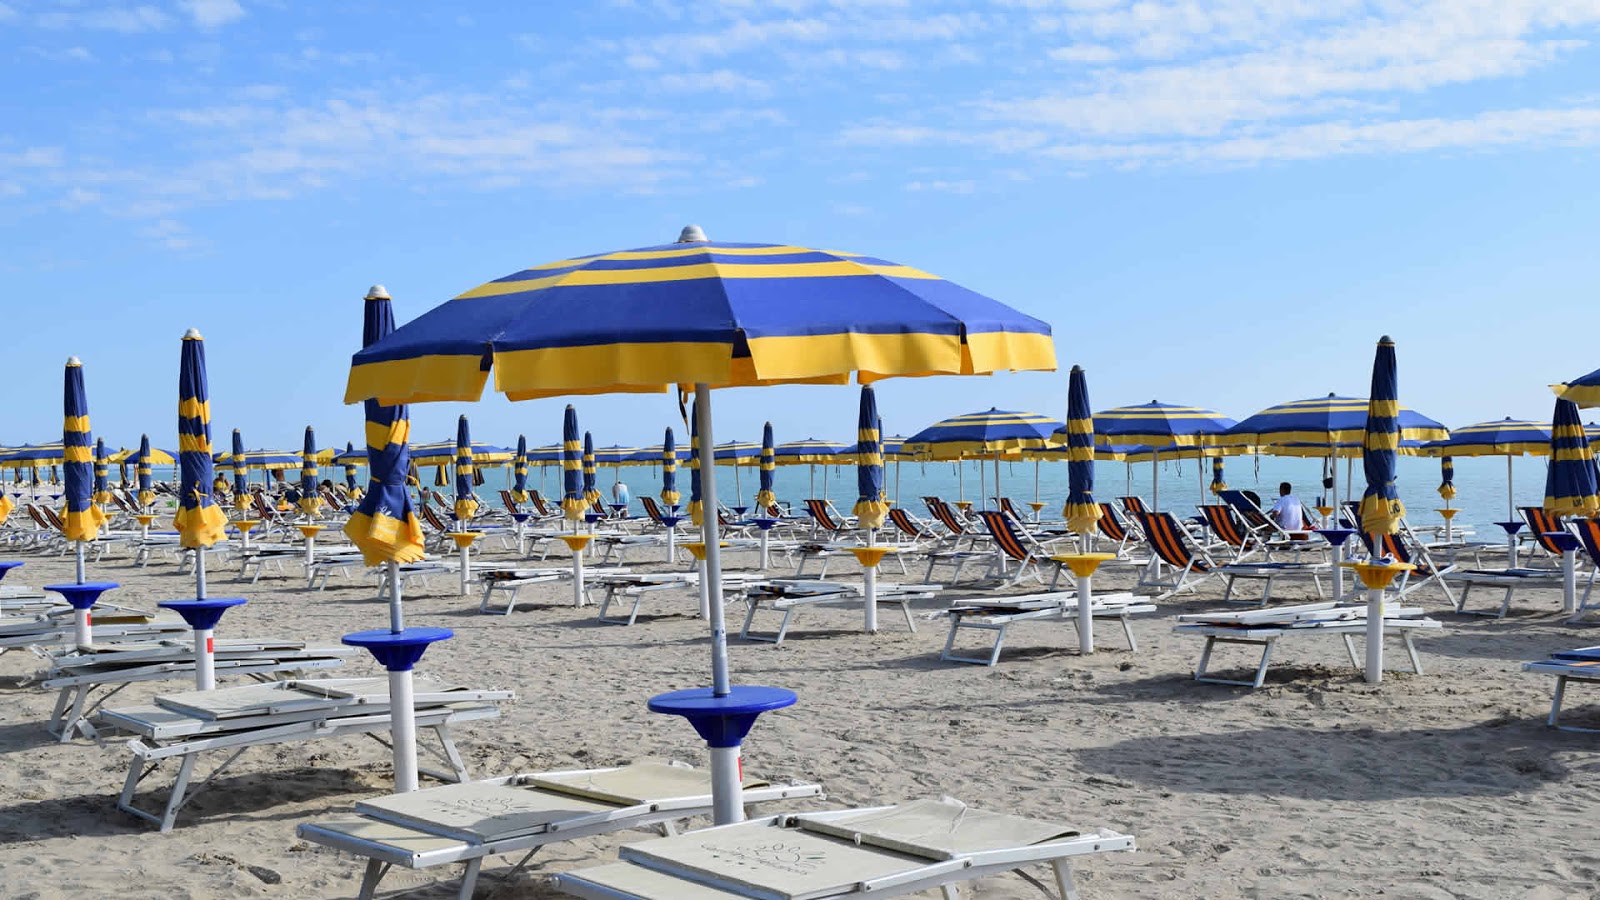 Fotografija Spiaggia Pineto in naselje